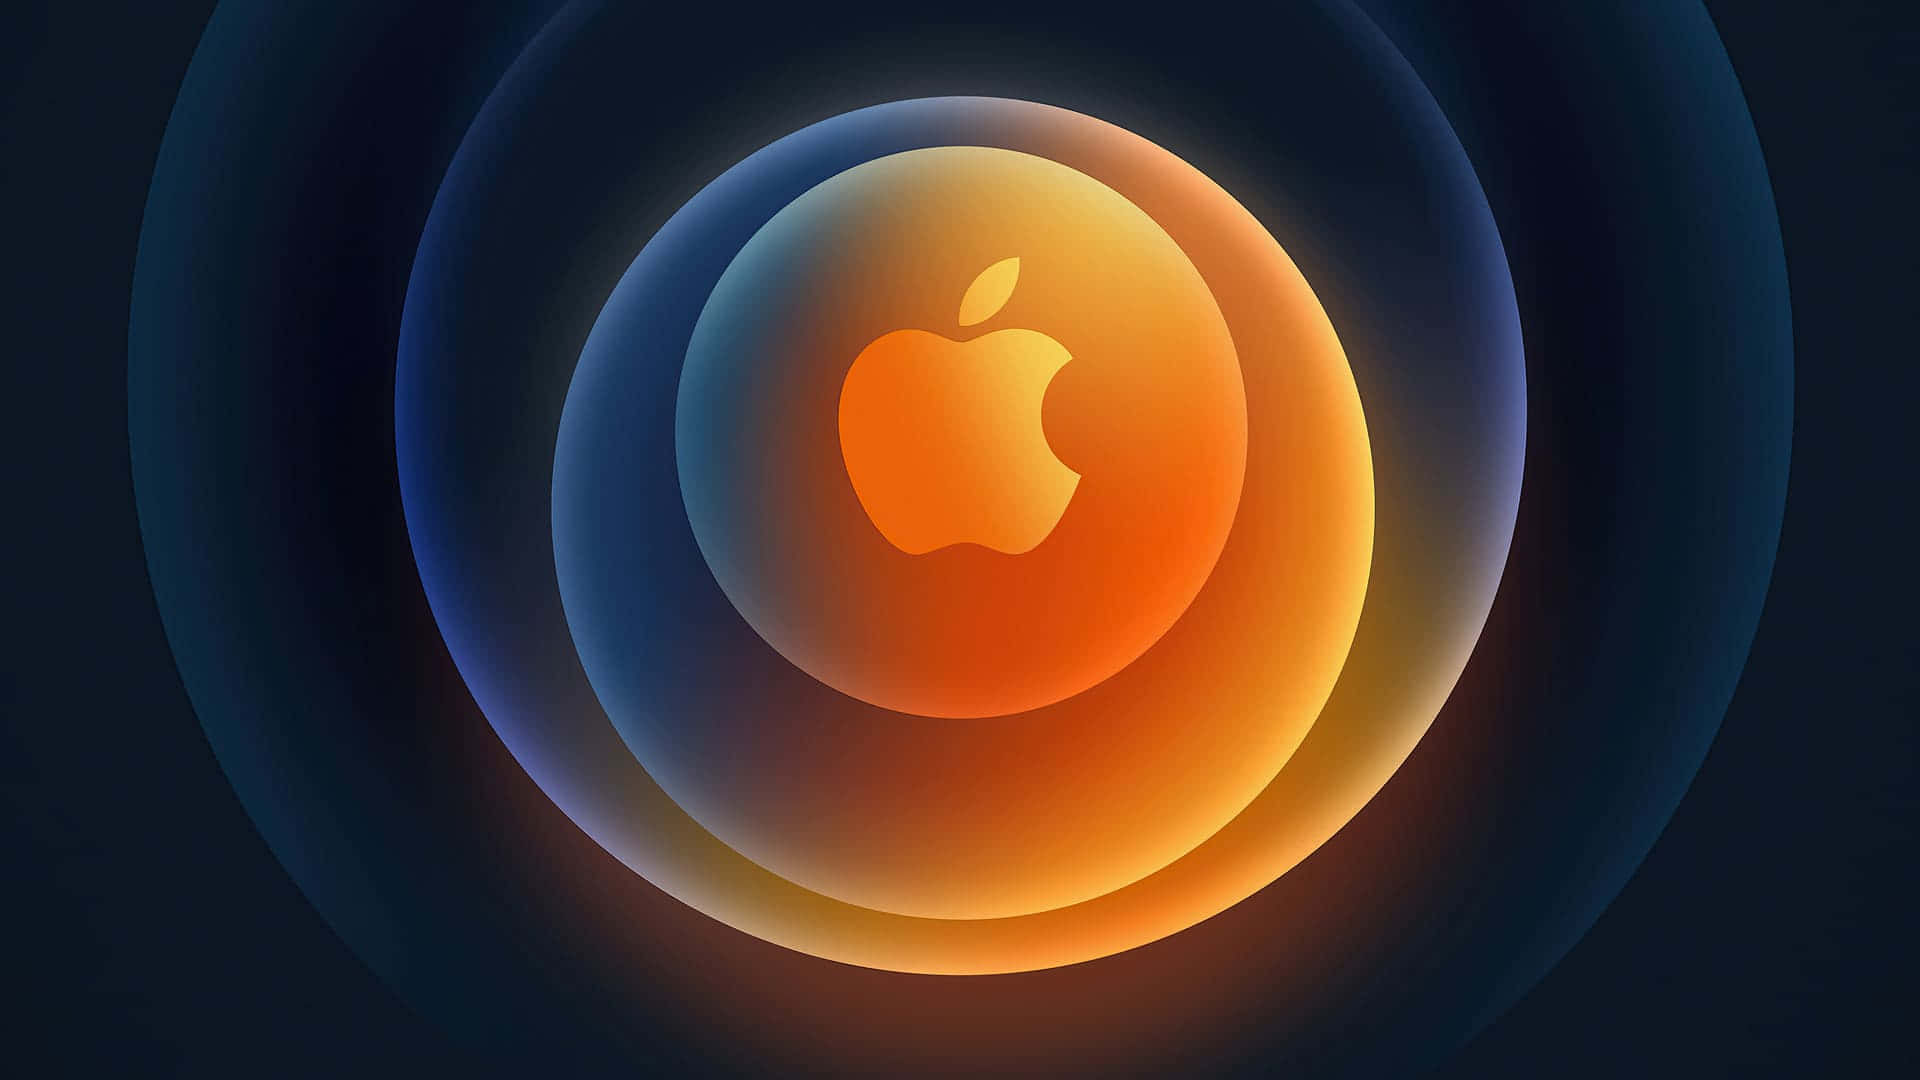 Logotipoda Apple 1920 X 1080 Plano De Fundo